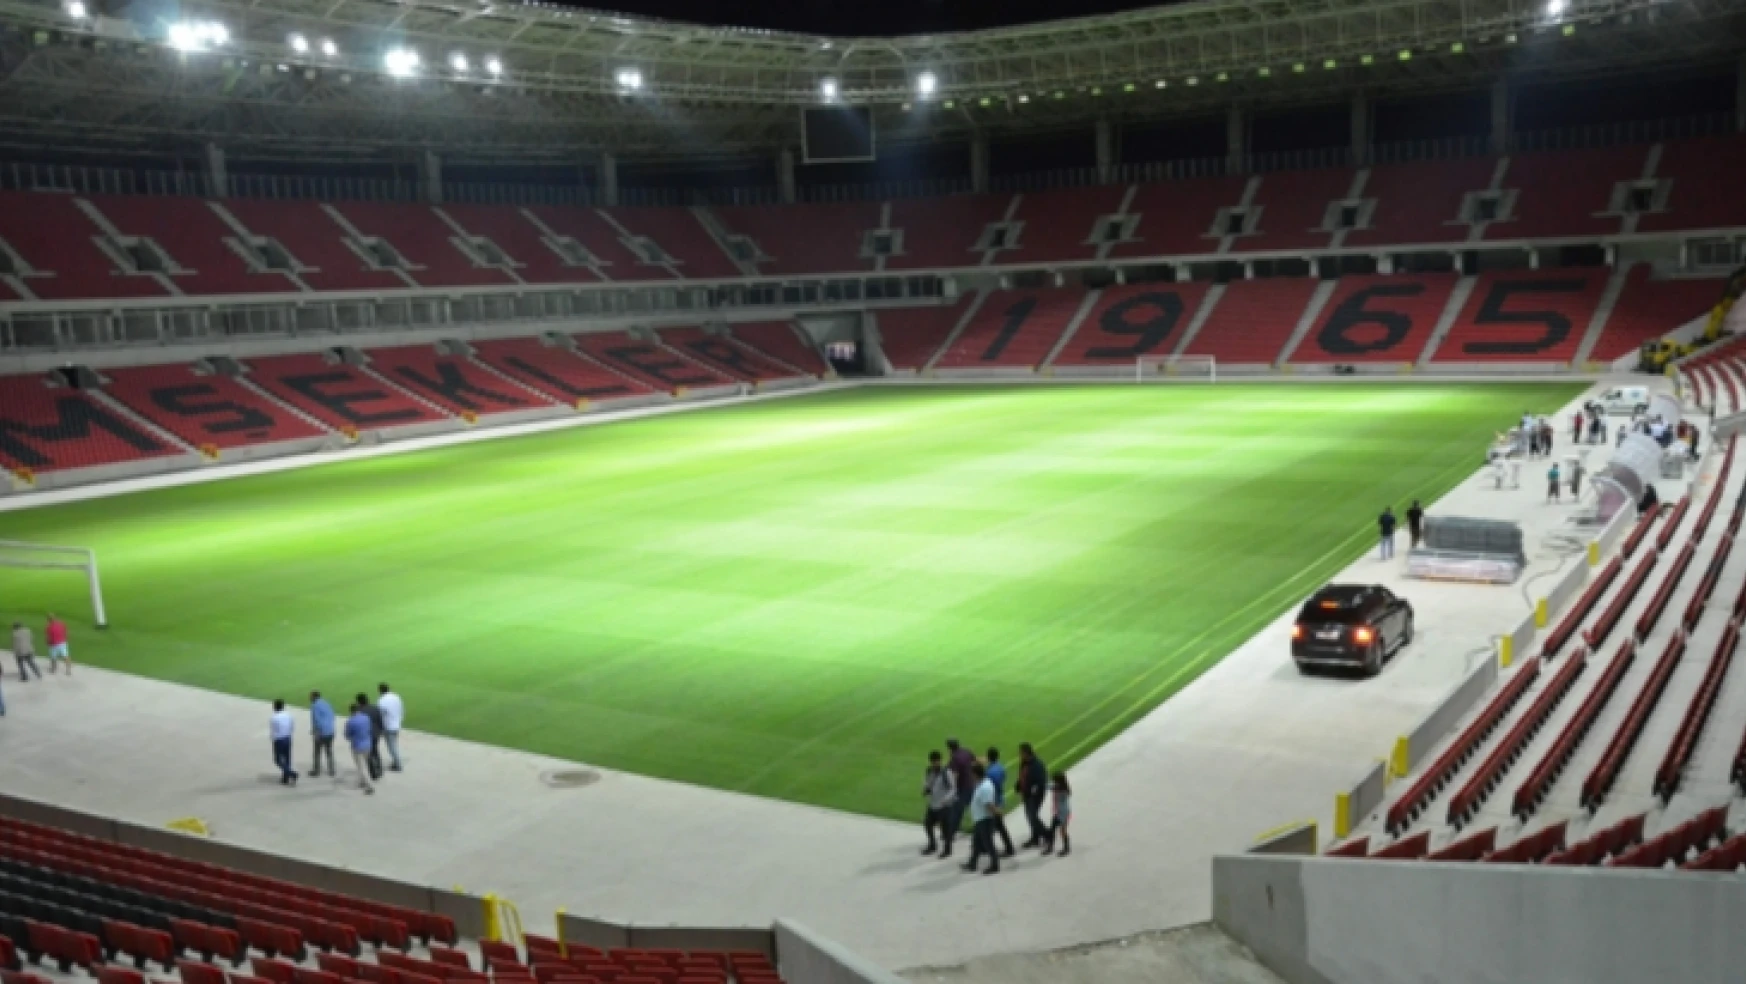 Eskişehirspor - Yeni Malatyaspor maçının saati değişti